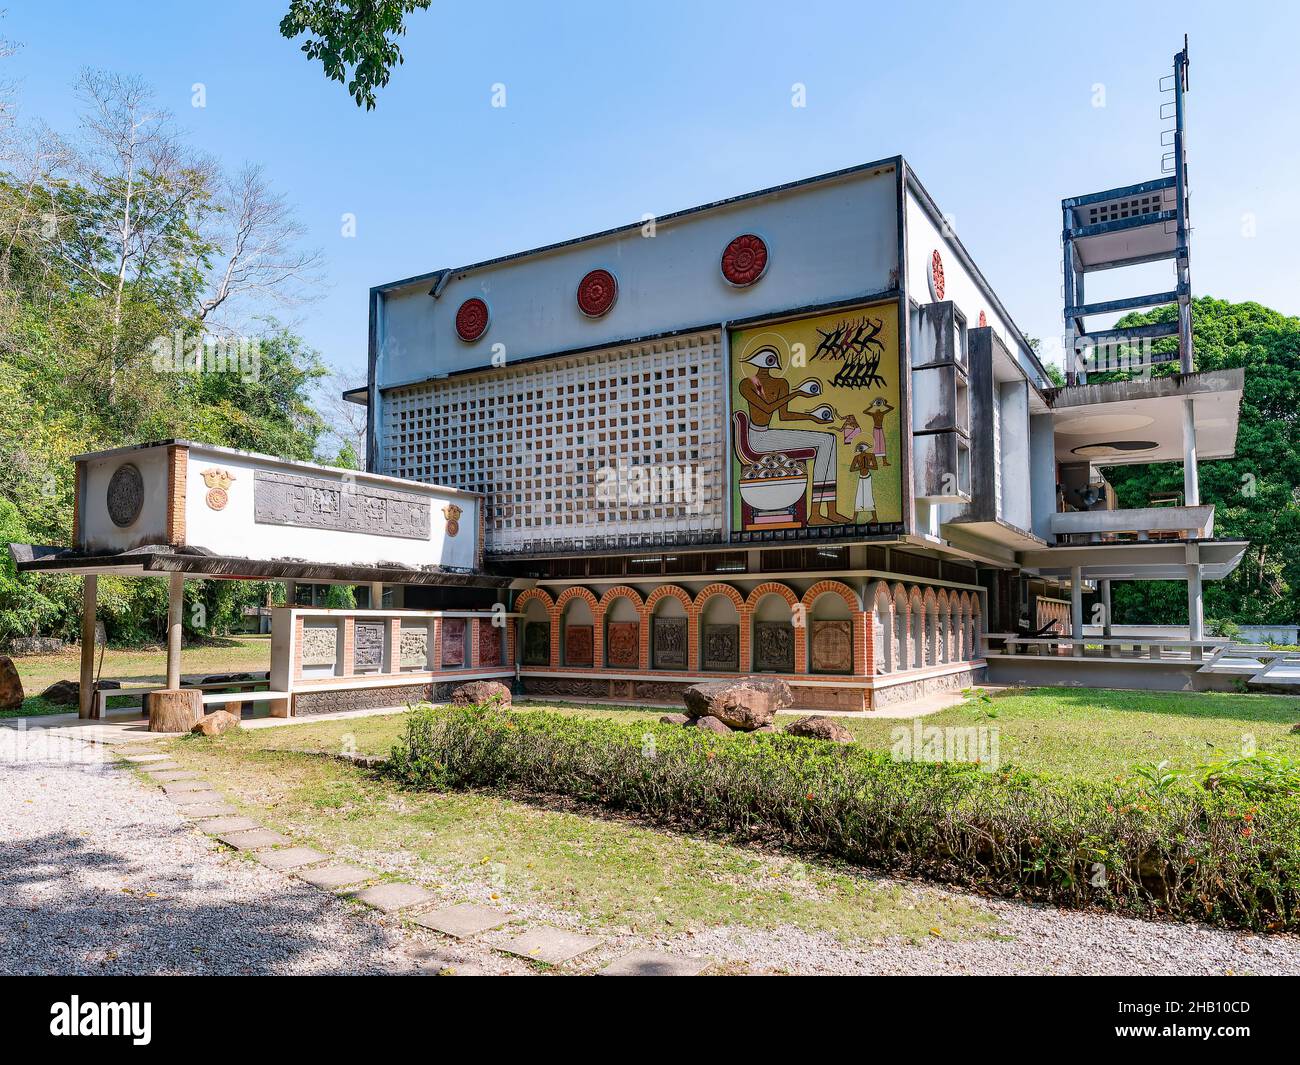 Teatro spirituale di Wat Suan Mokkh nella provincia di Surat Thani in Thailandia. Wat Suan Mokkh è stato fondato nel 1932 dal buddhadasa Bhikkhu, un buddista Foto Stock